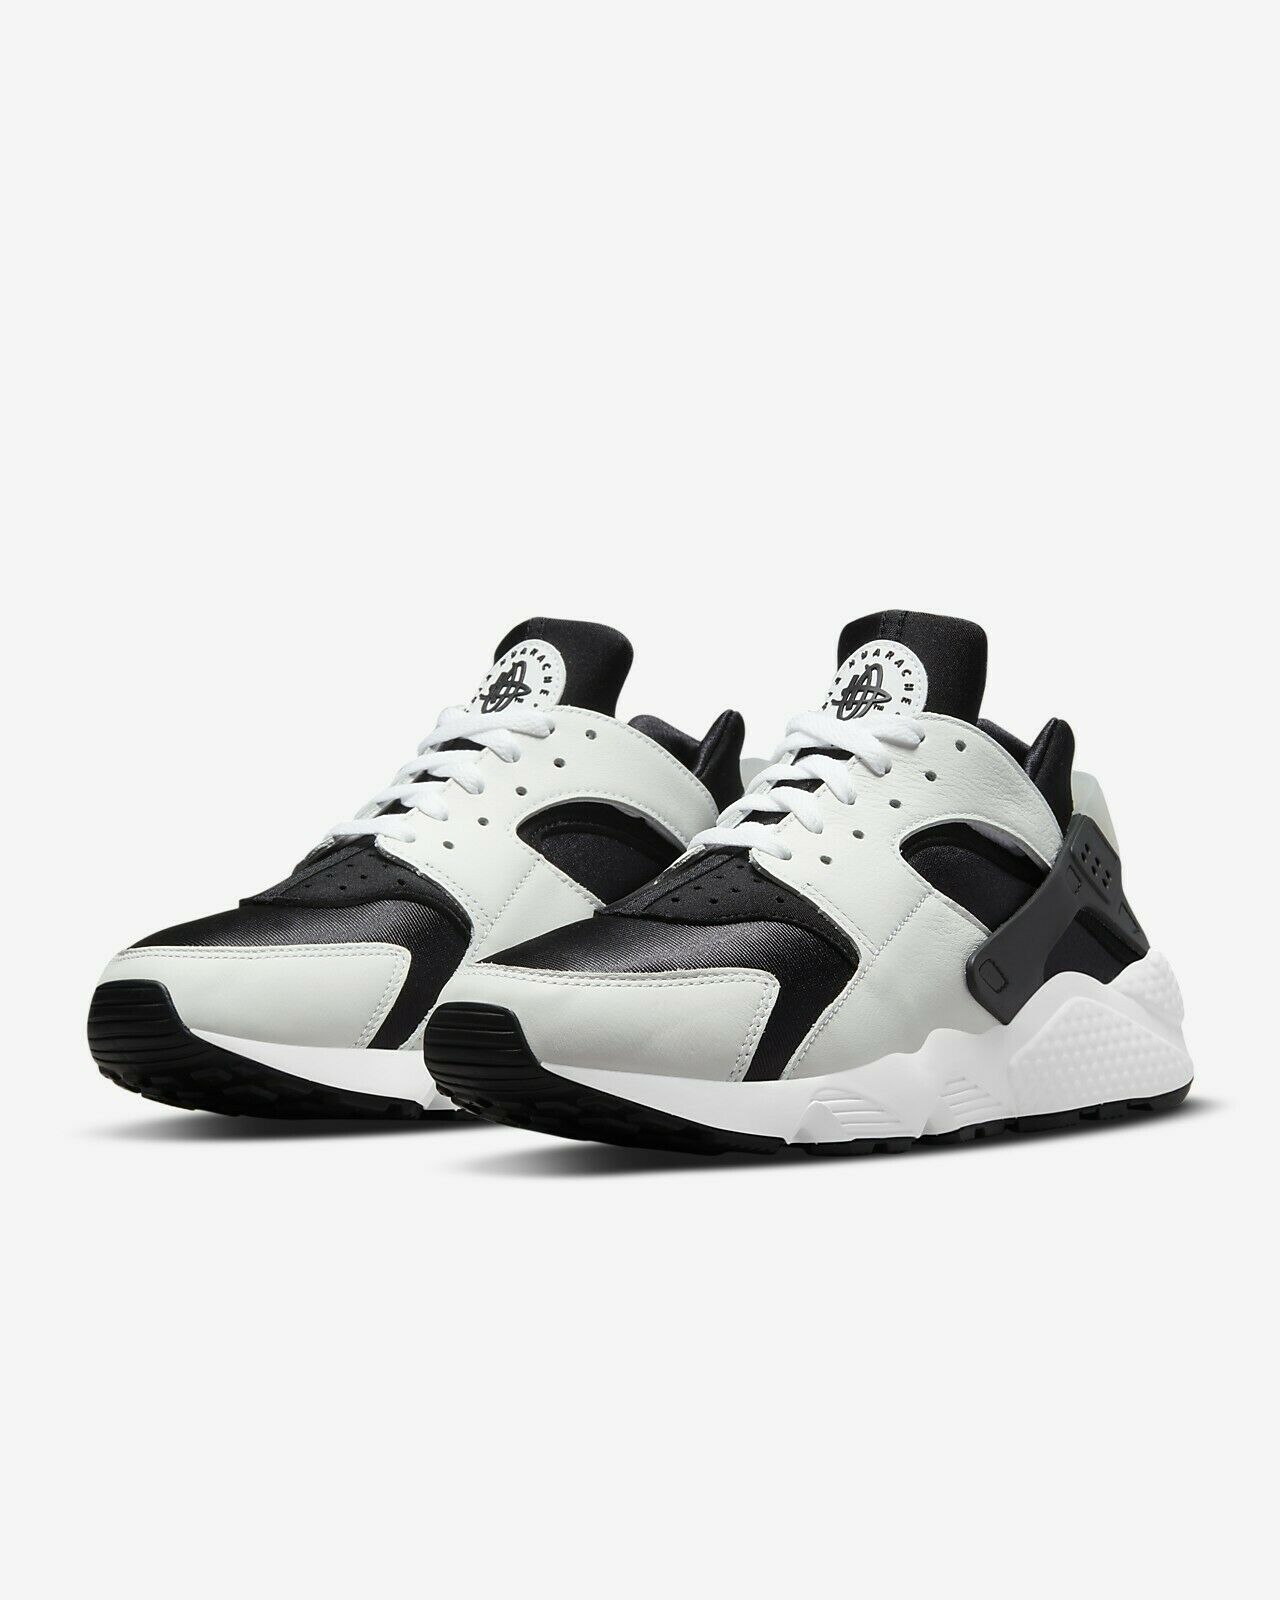 Nike Air Huarache 'Orca' White/Black Shoes Men's 14 DD1068 001